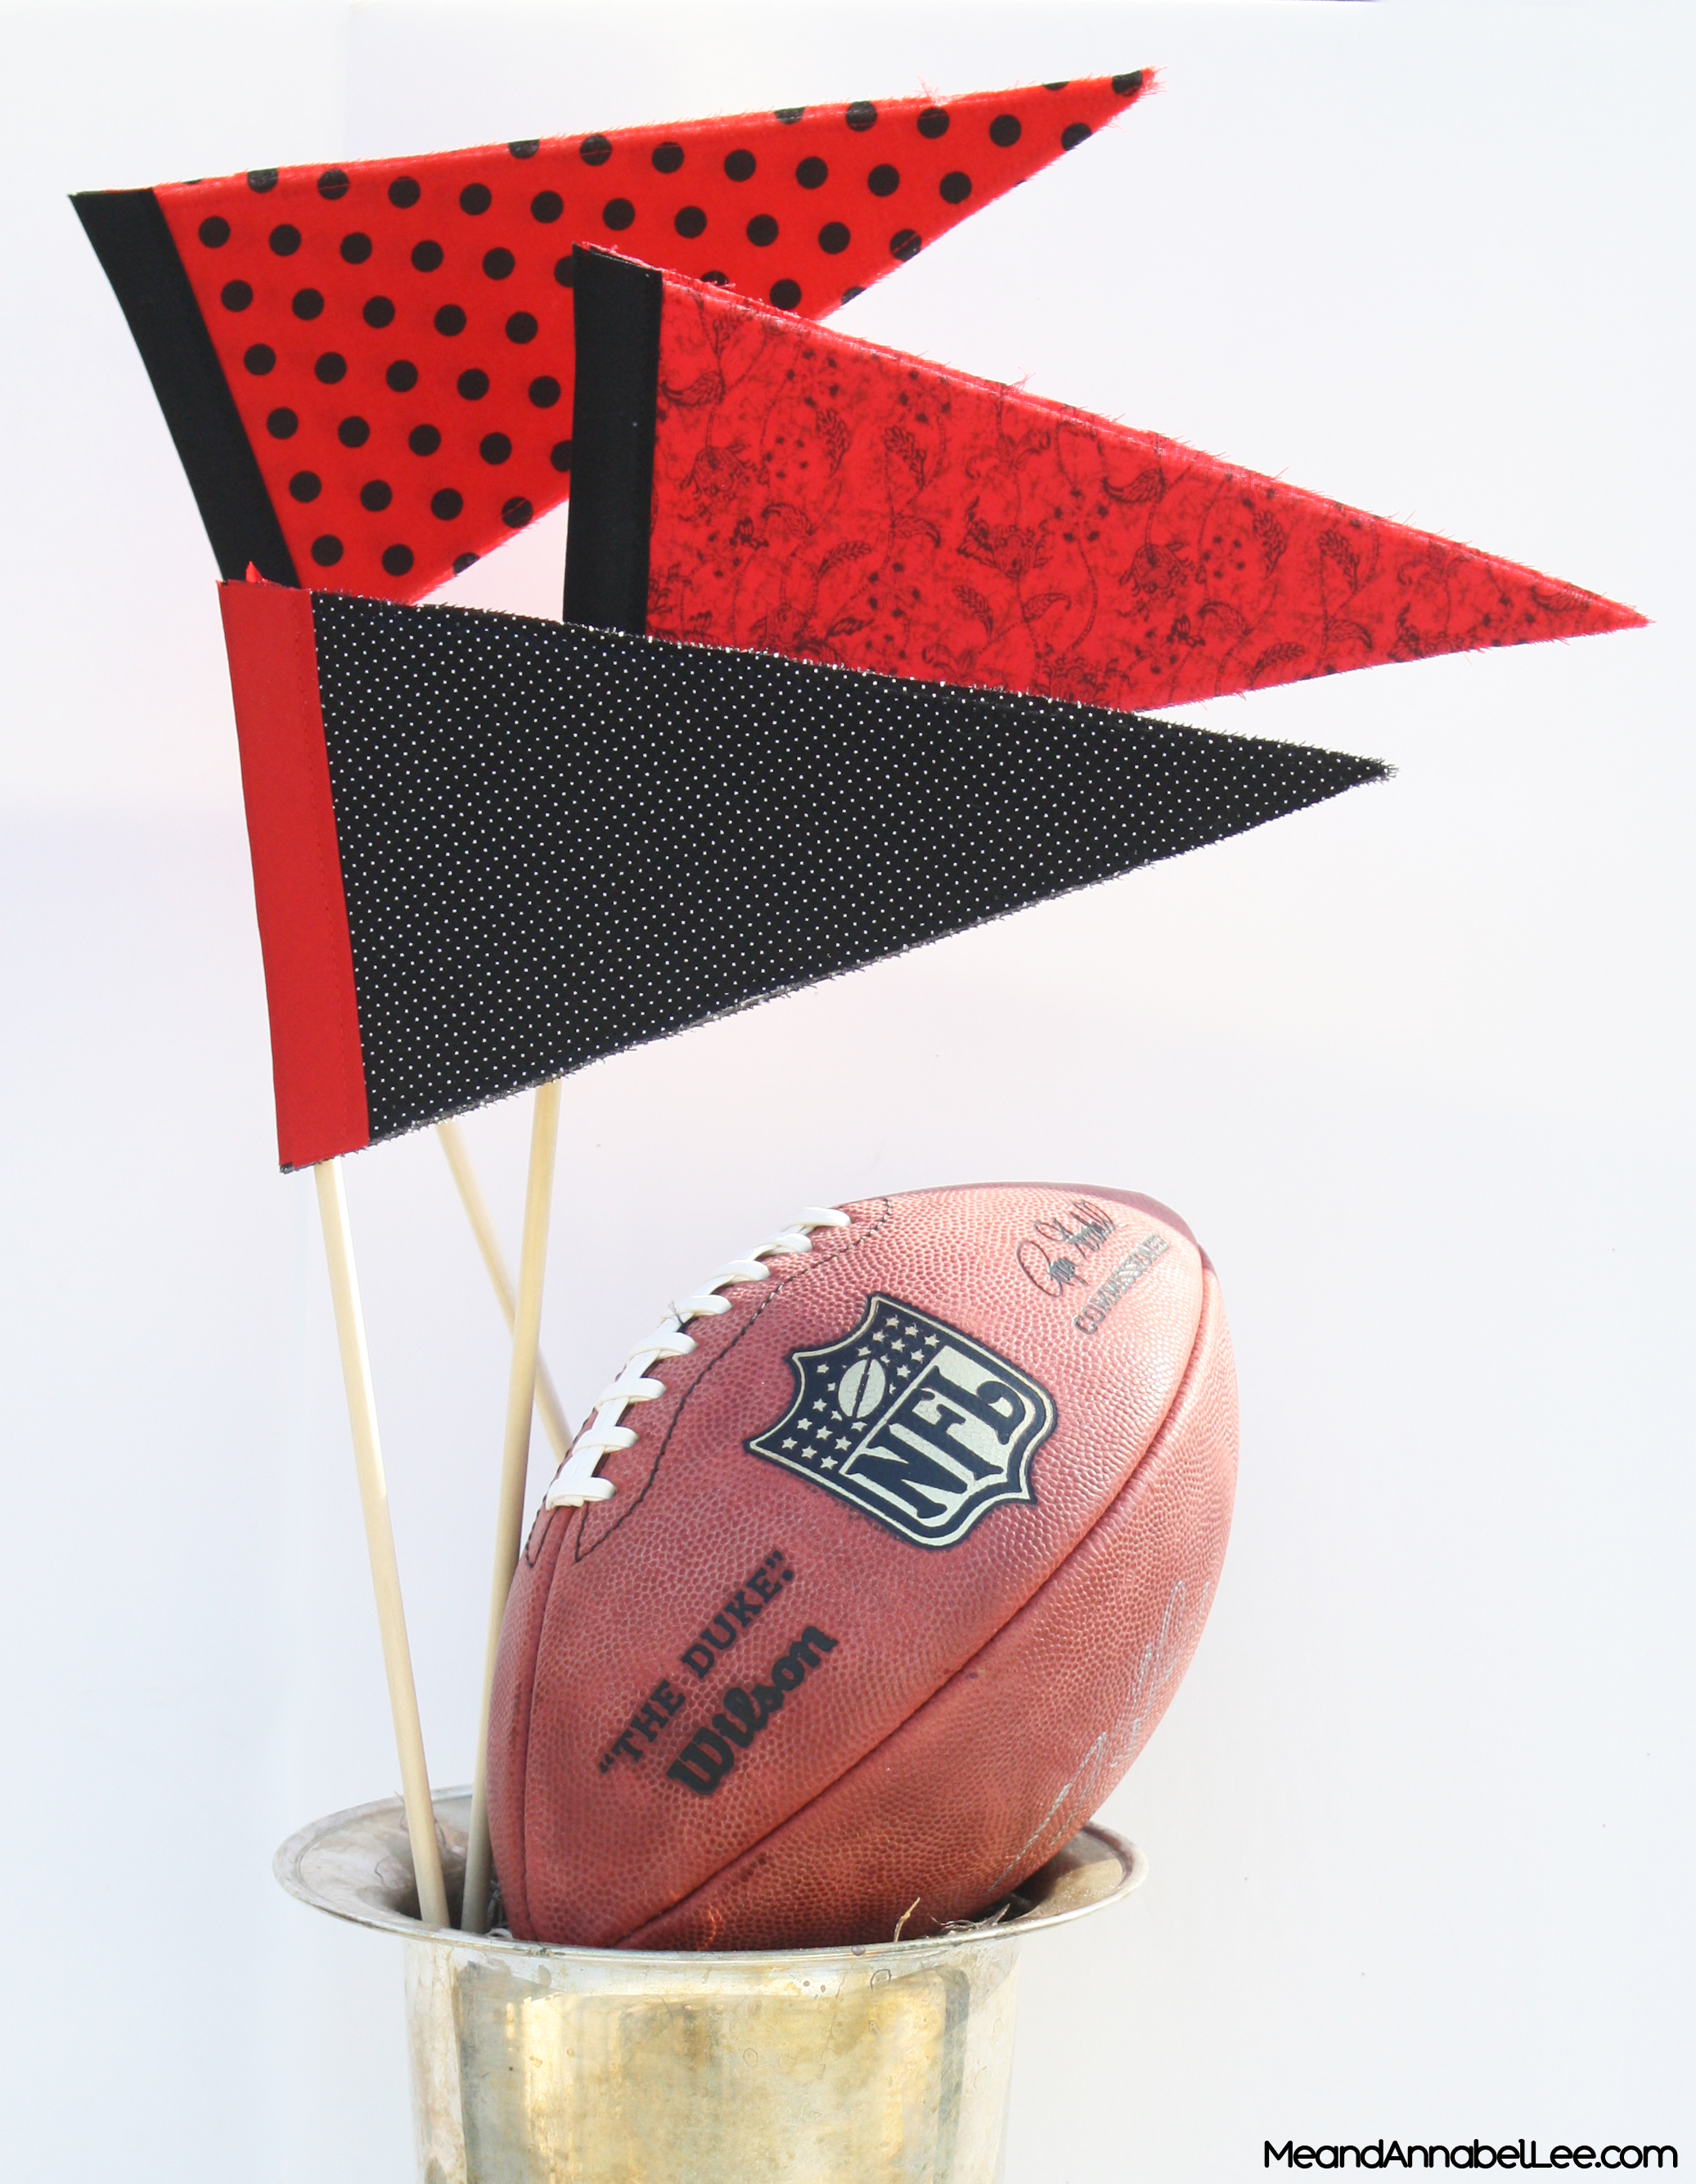 DIY Team Color Pennant Flags - Super Bowl Party - Football Party Decorations - Super Bowl LI Atlanta Falcons vs New England Patriots - www.MeandannabelLee.com